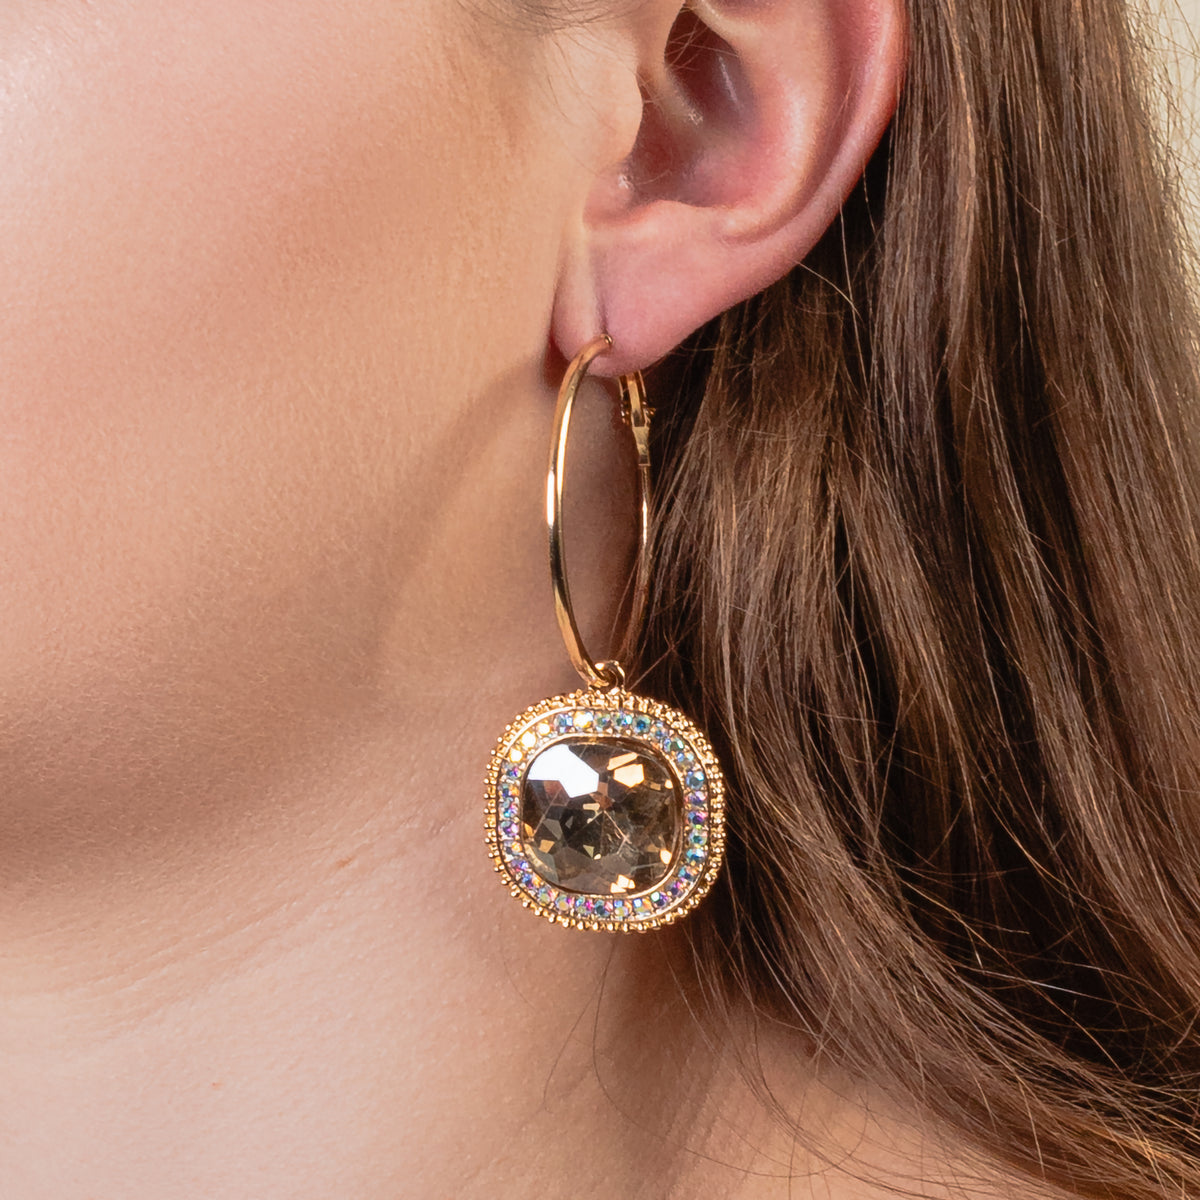 1312 - Rhinestone Hoop Earrings - Gold